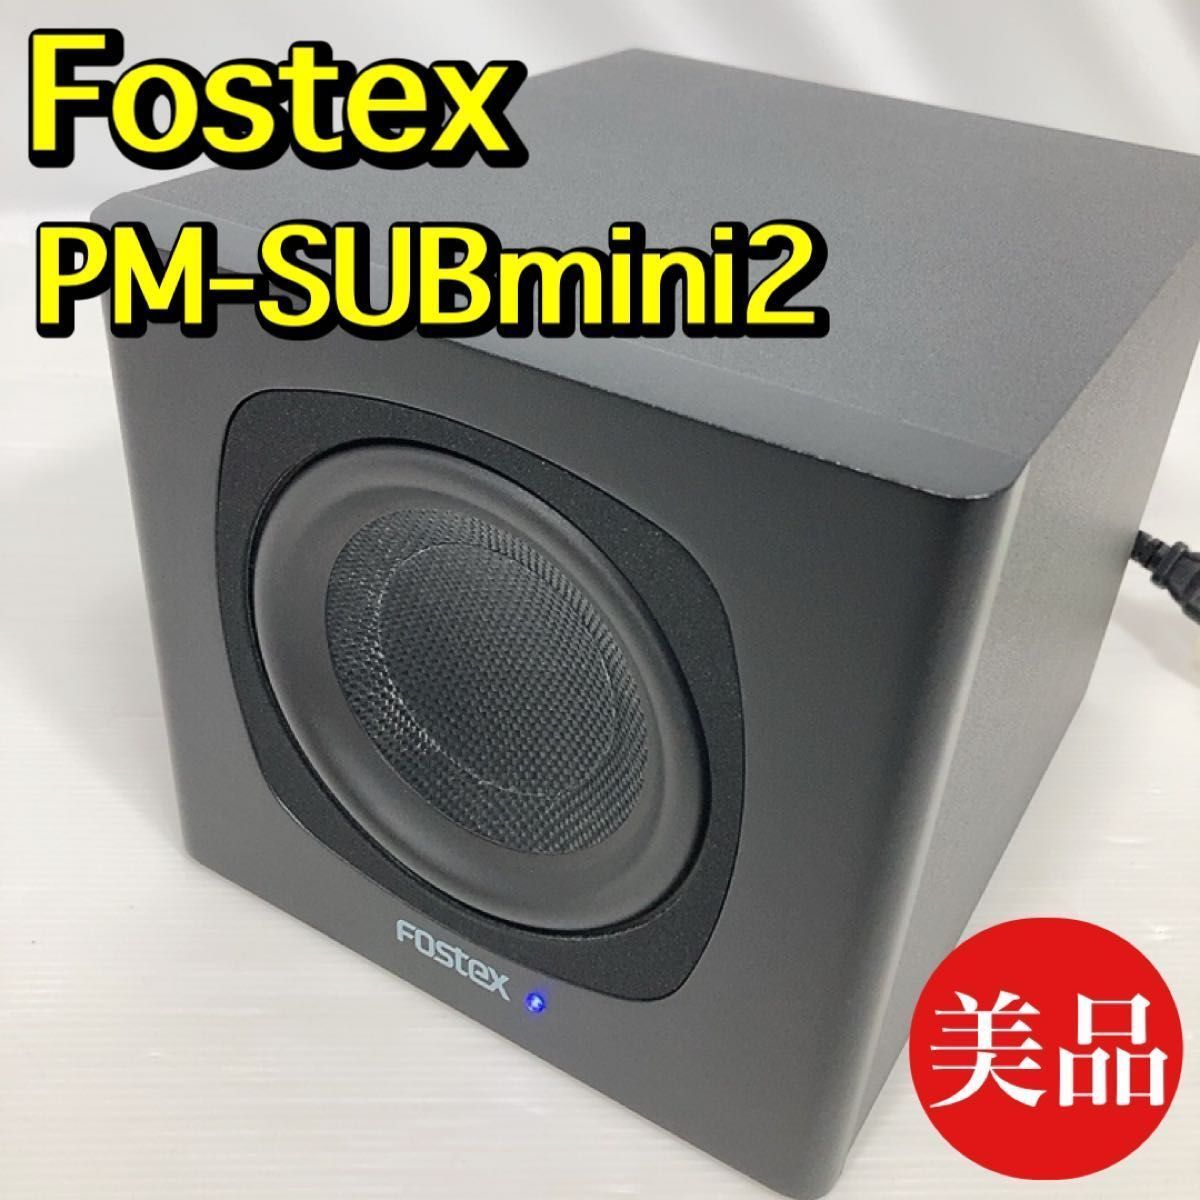 FOSTEX アクティブ・サブウーハー PM-SUBmini2 フォステクス 15W